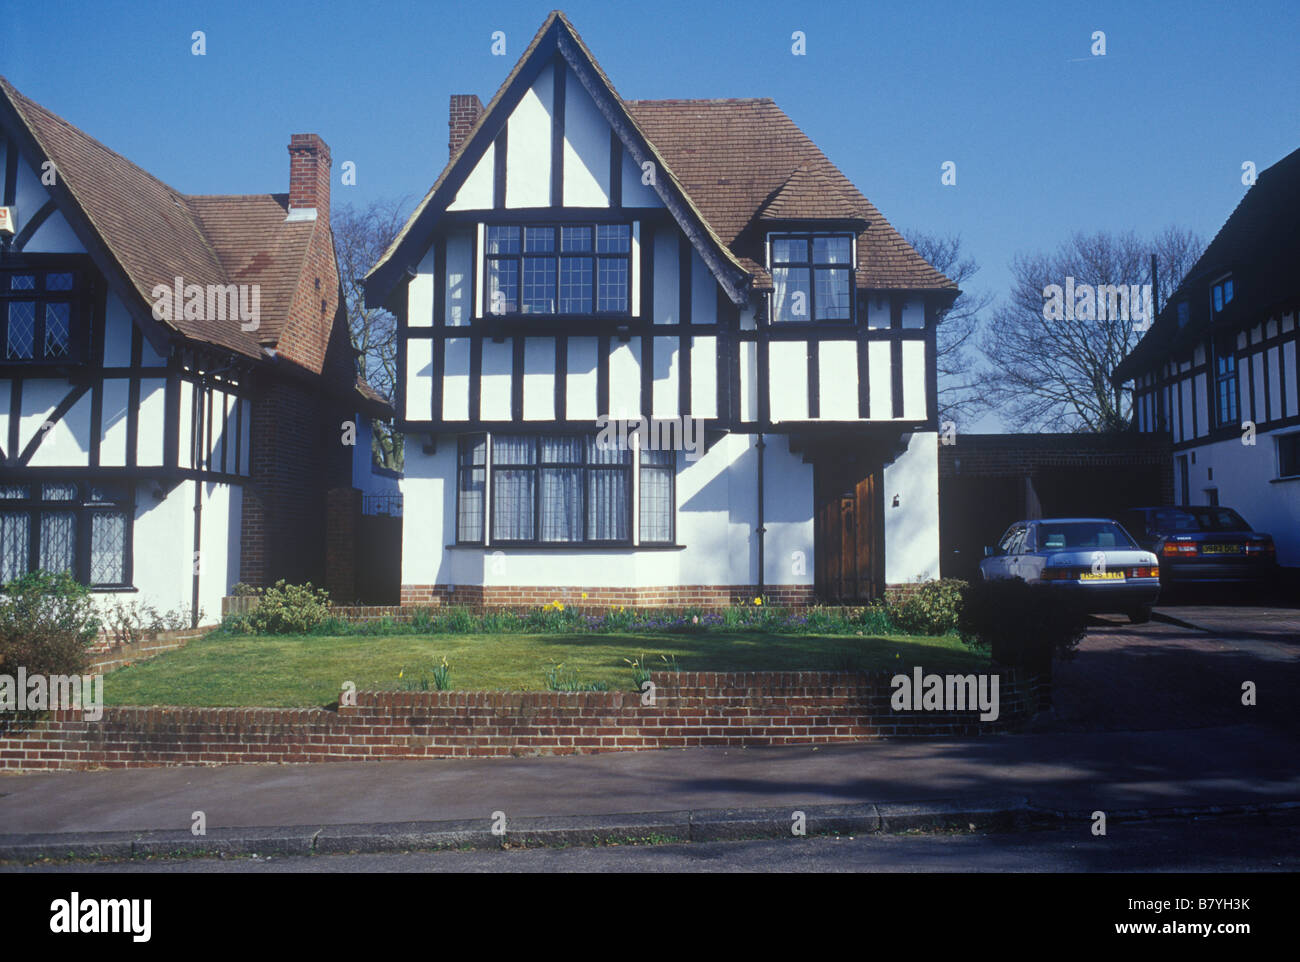 Norwood Surrey UK tipico Home Counties suburban staccata casa di famiglia costruita negli anni venti o trenta in finto legno Tudor stile cornice Foto Stock